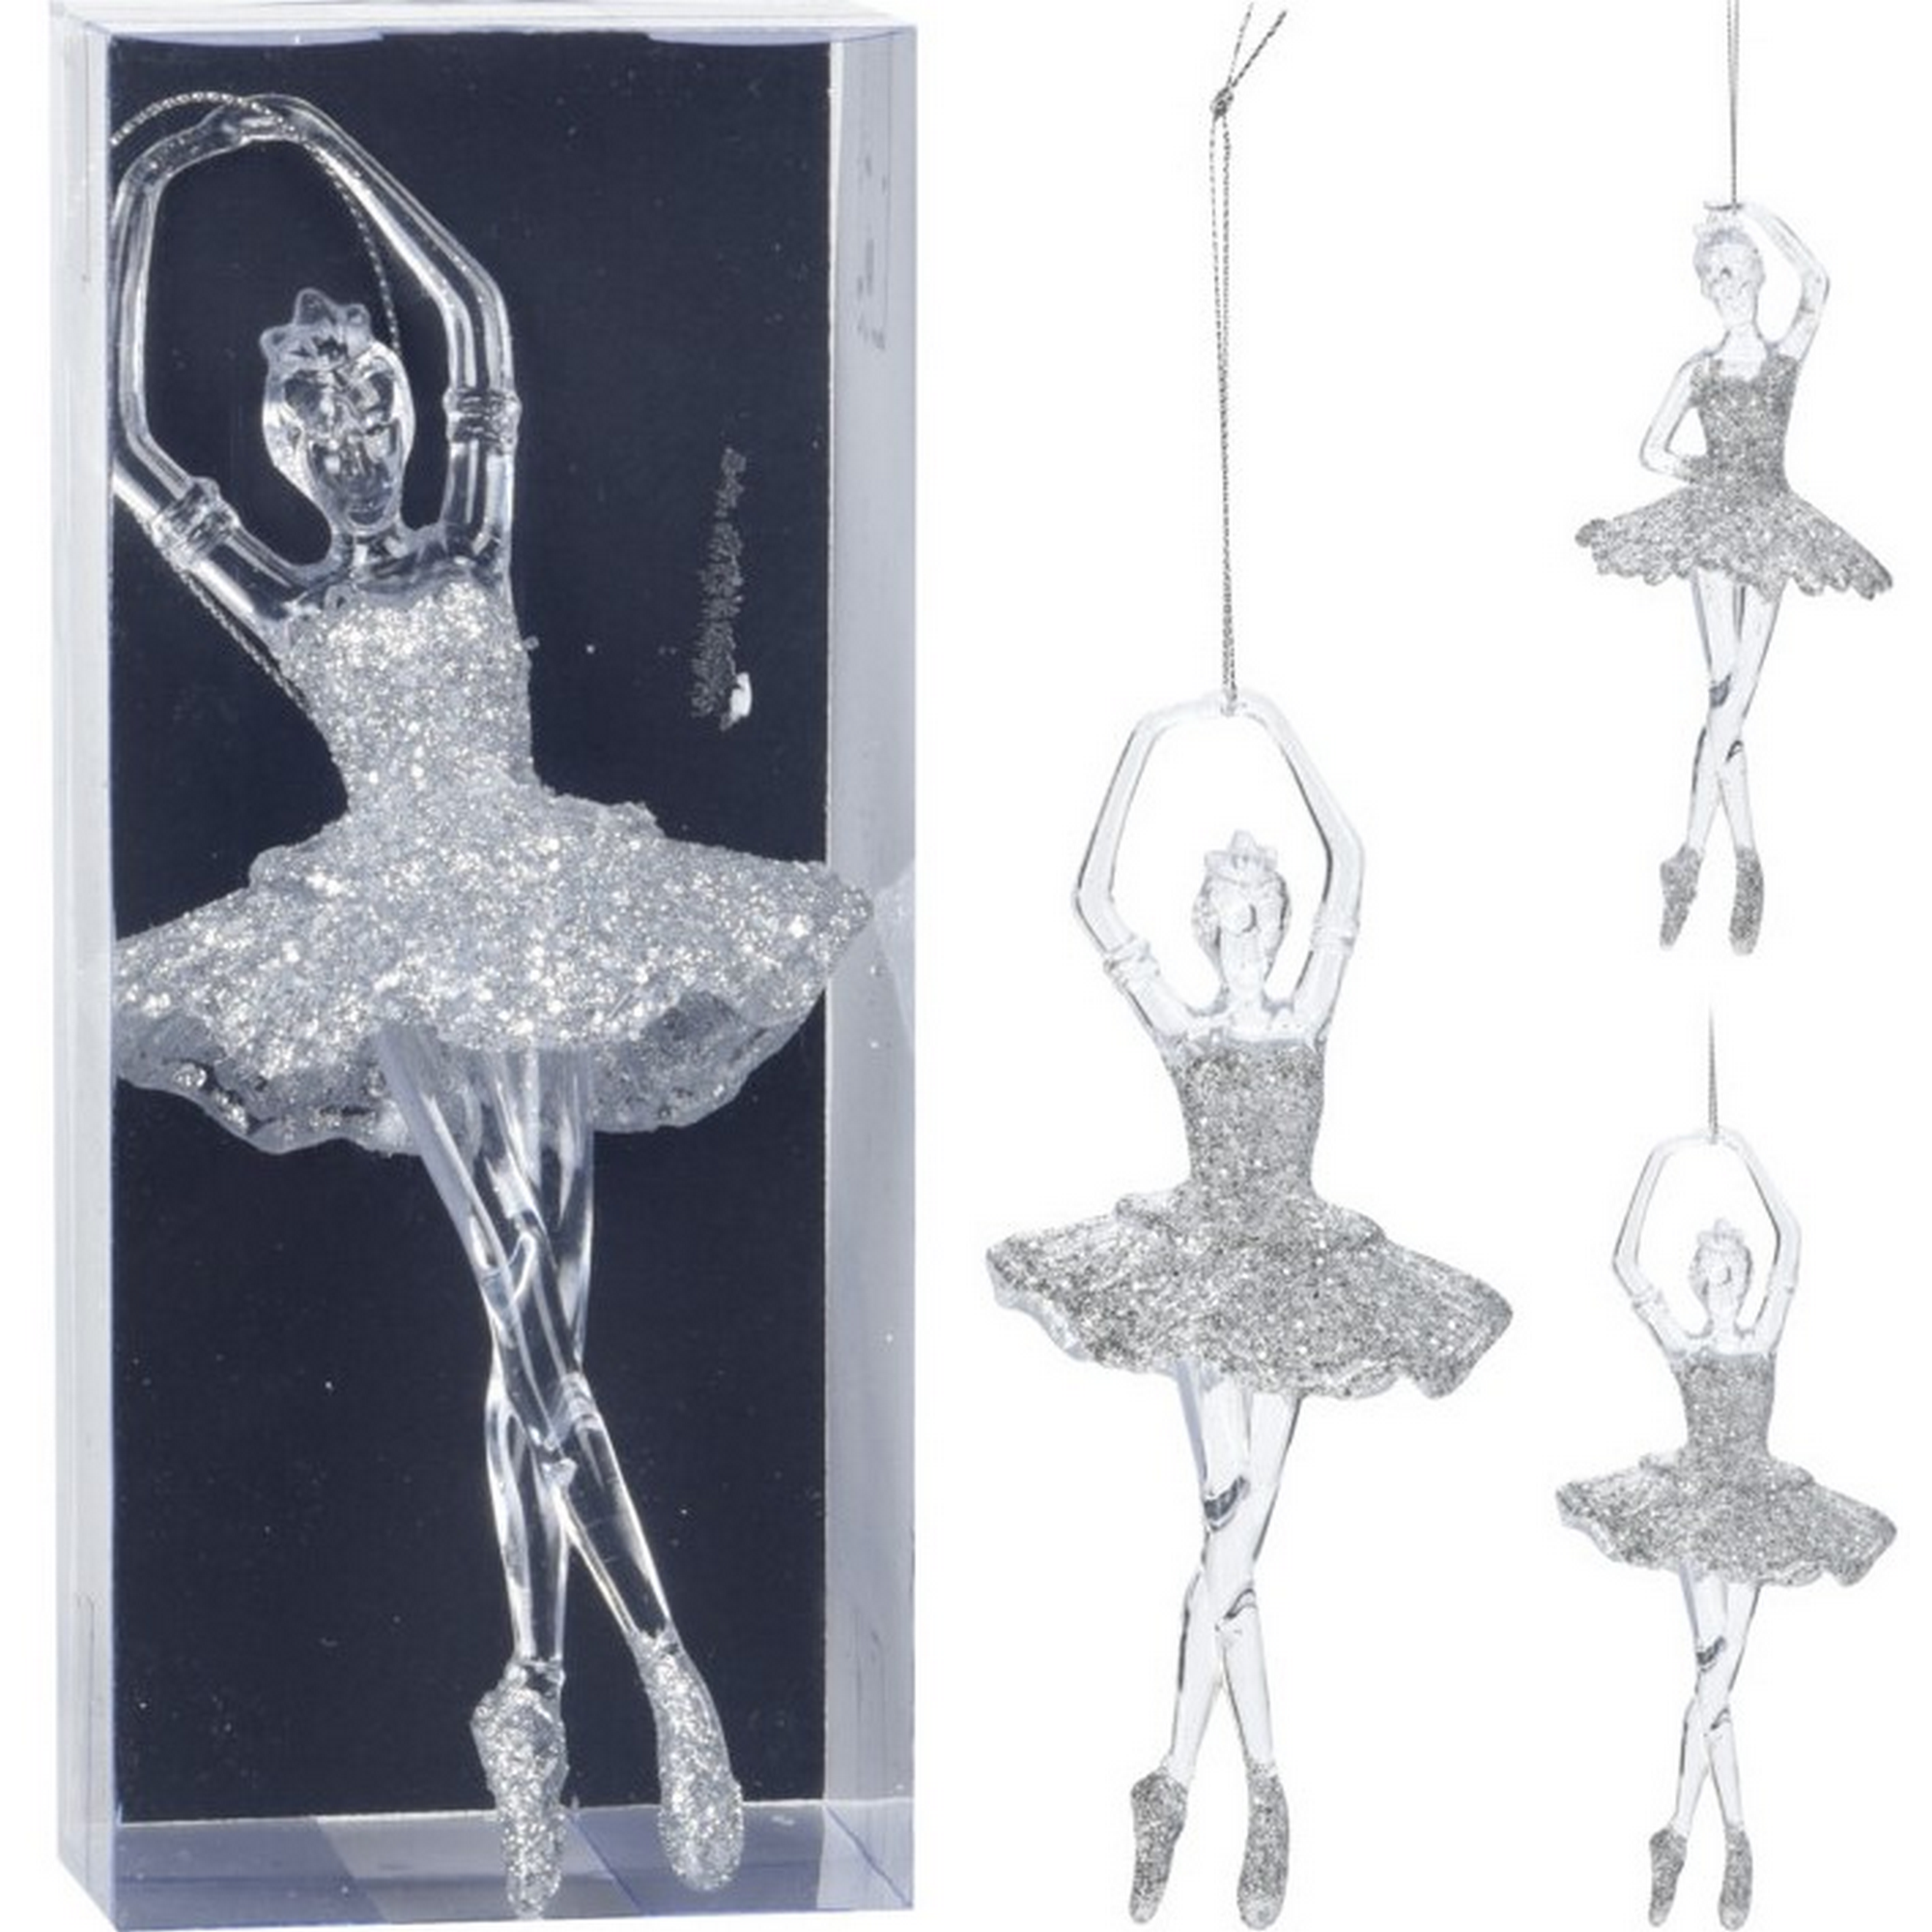 Hängedekoration 'Ballerina' 17 cm, 2 Ausführungen sortiert + product picture